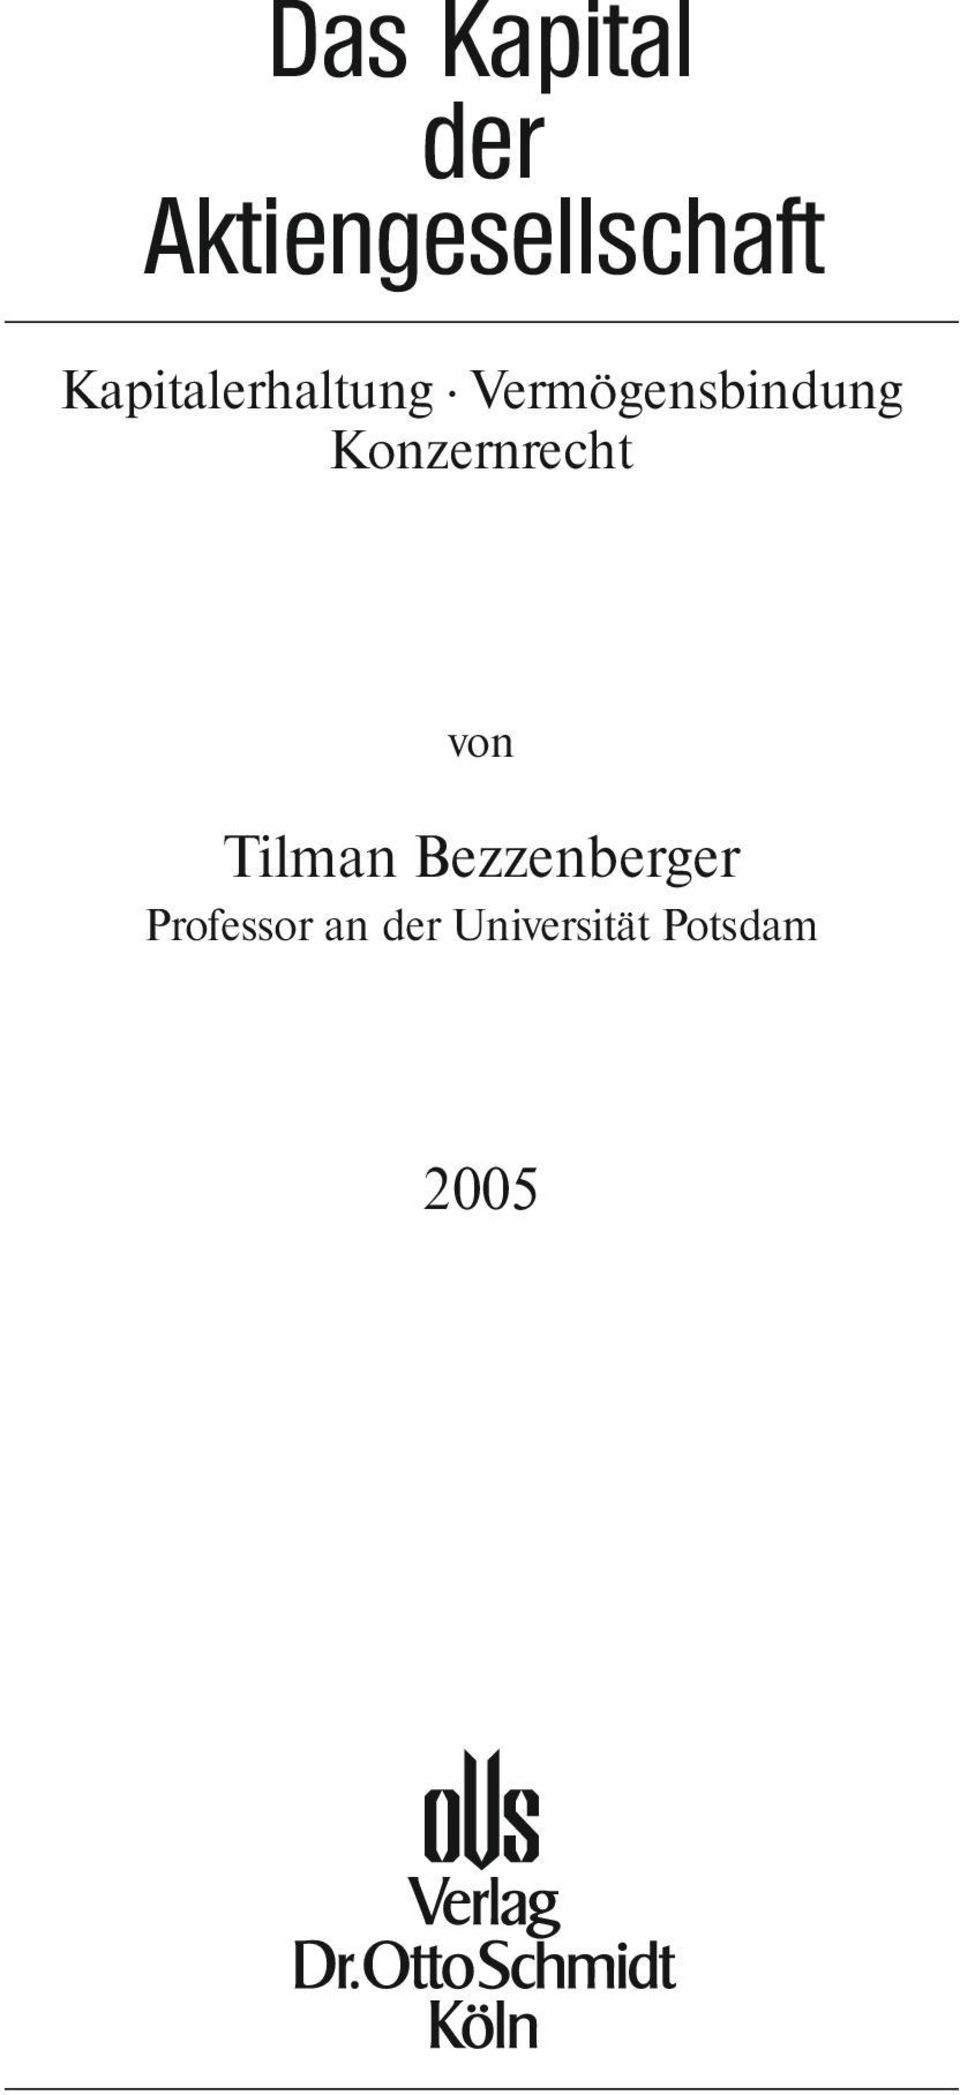 Konzernrecht von Tilman Bezzenberger